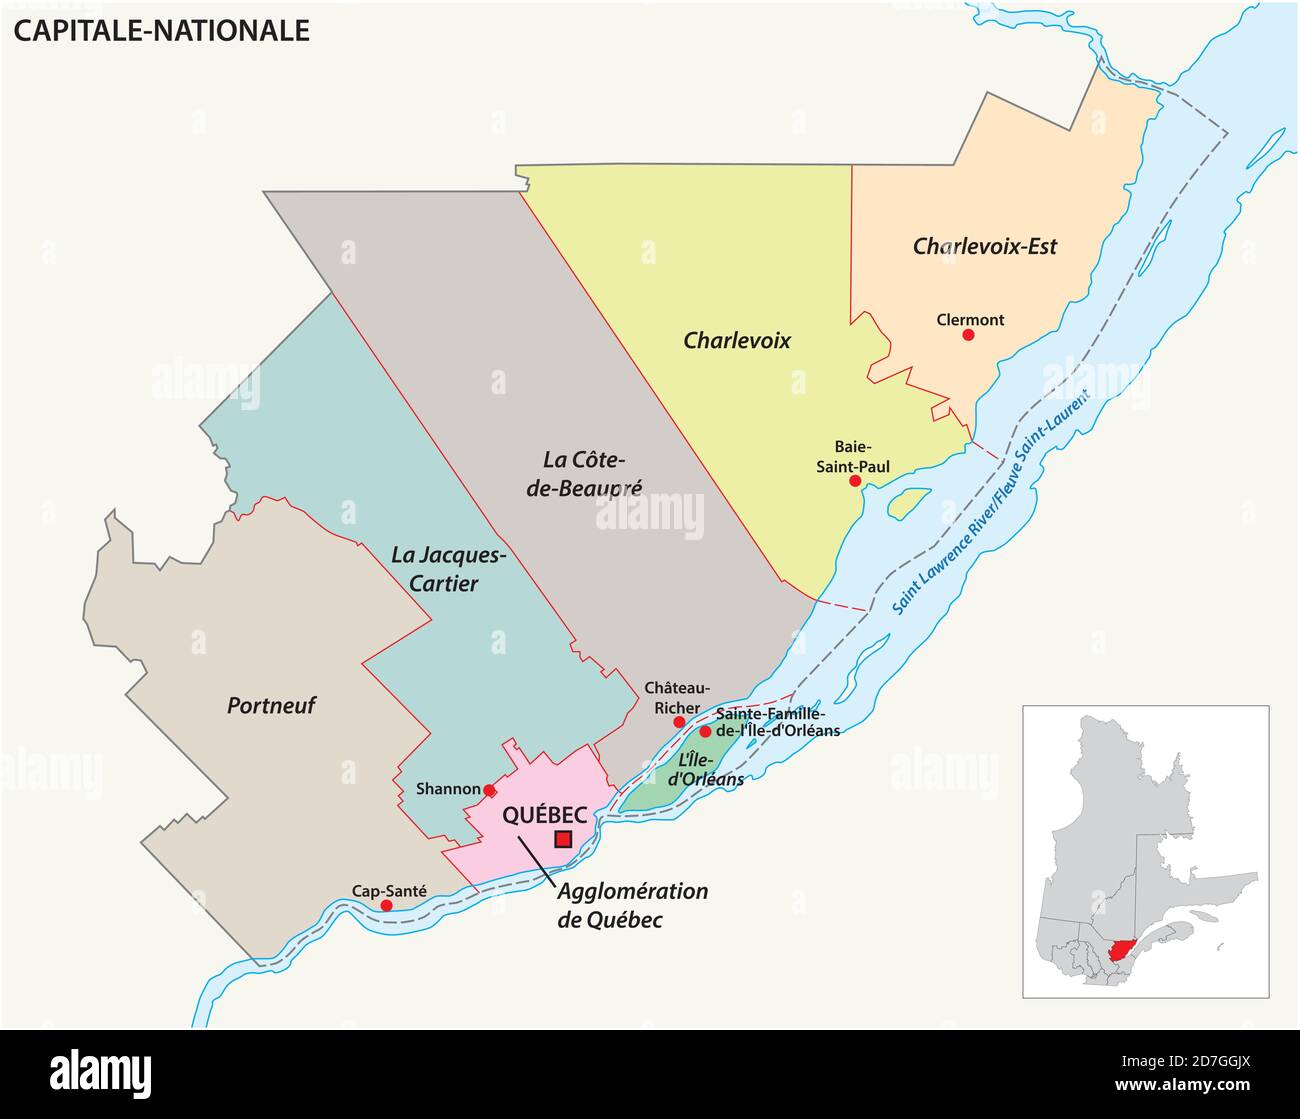 Carte vectorielle de la région administrative de la capitale nationale du Québec, Canada Illustration de Vecteur